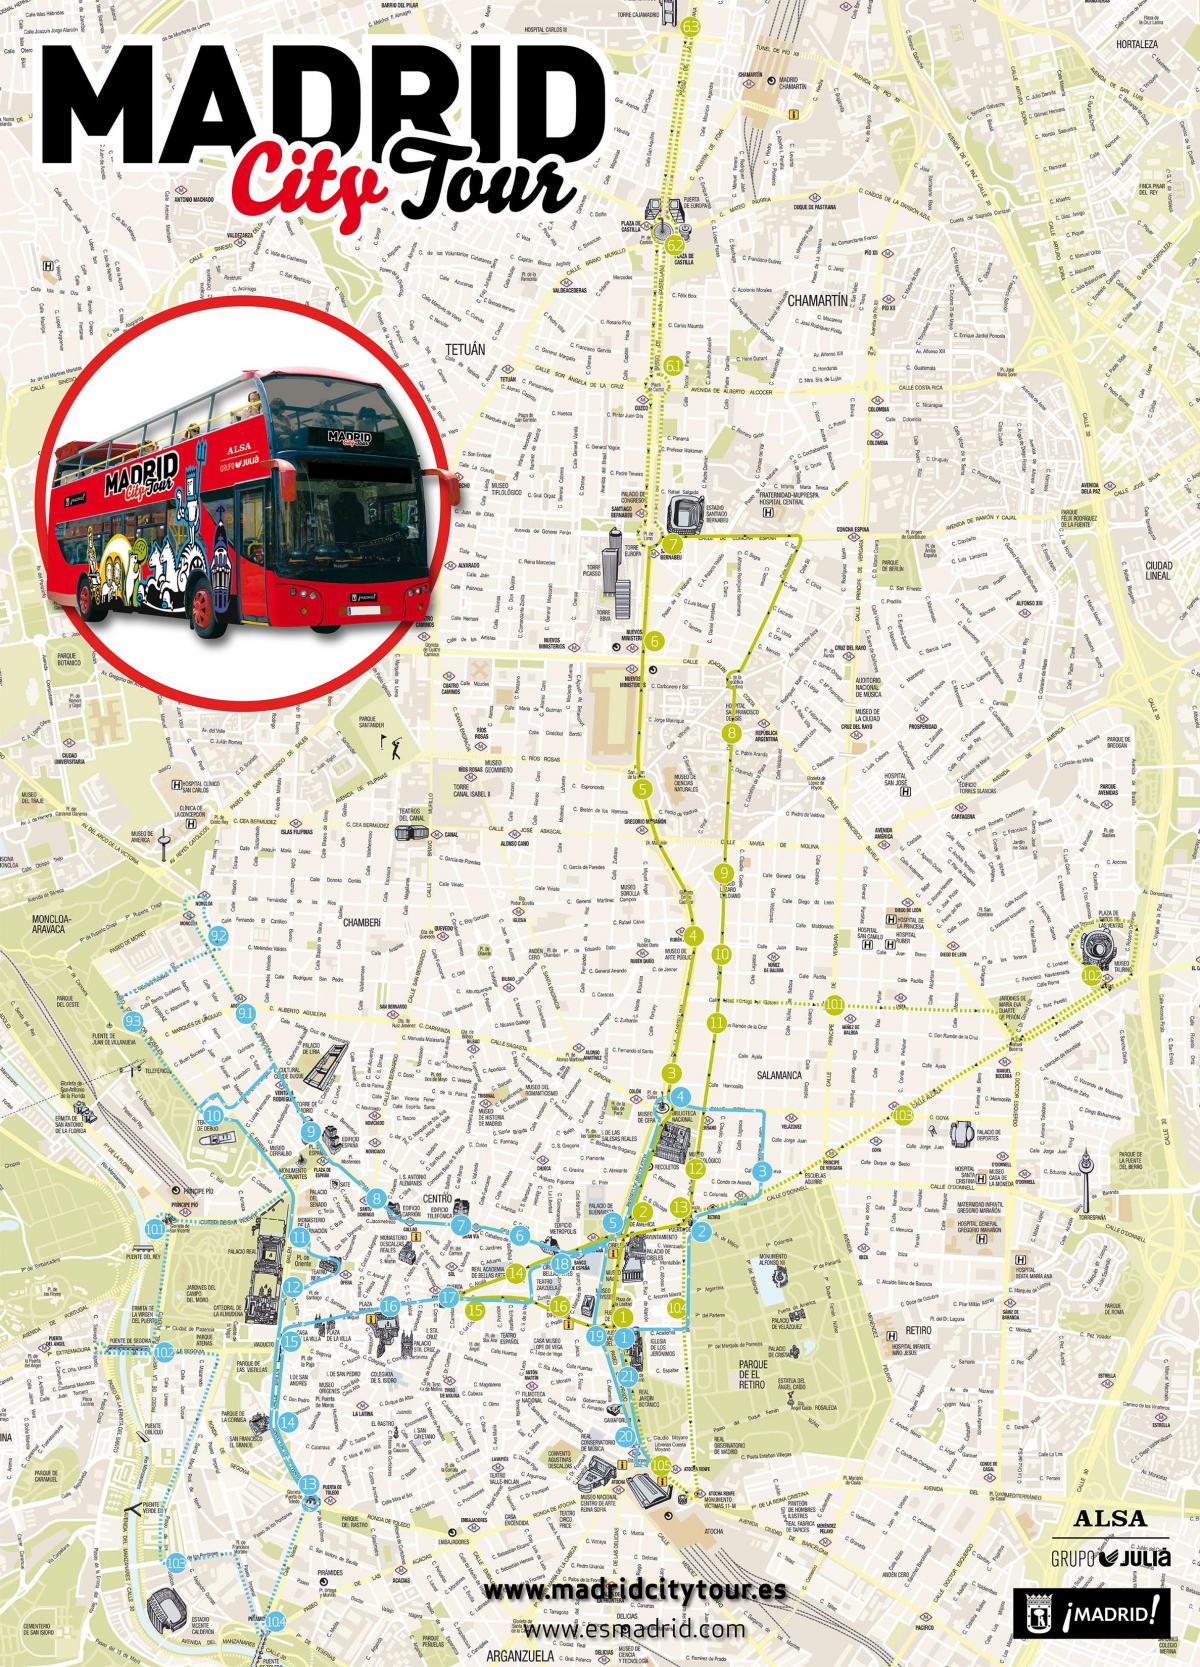 Madril hiriko autobus tour mapa